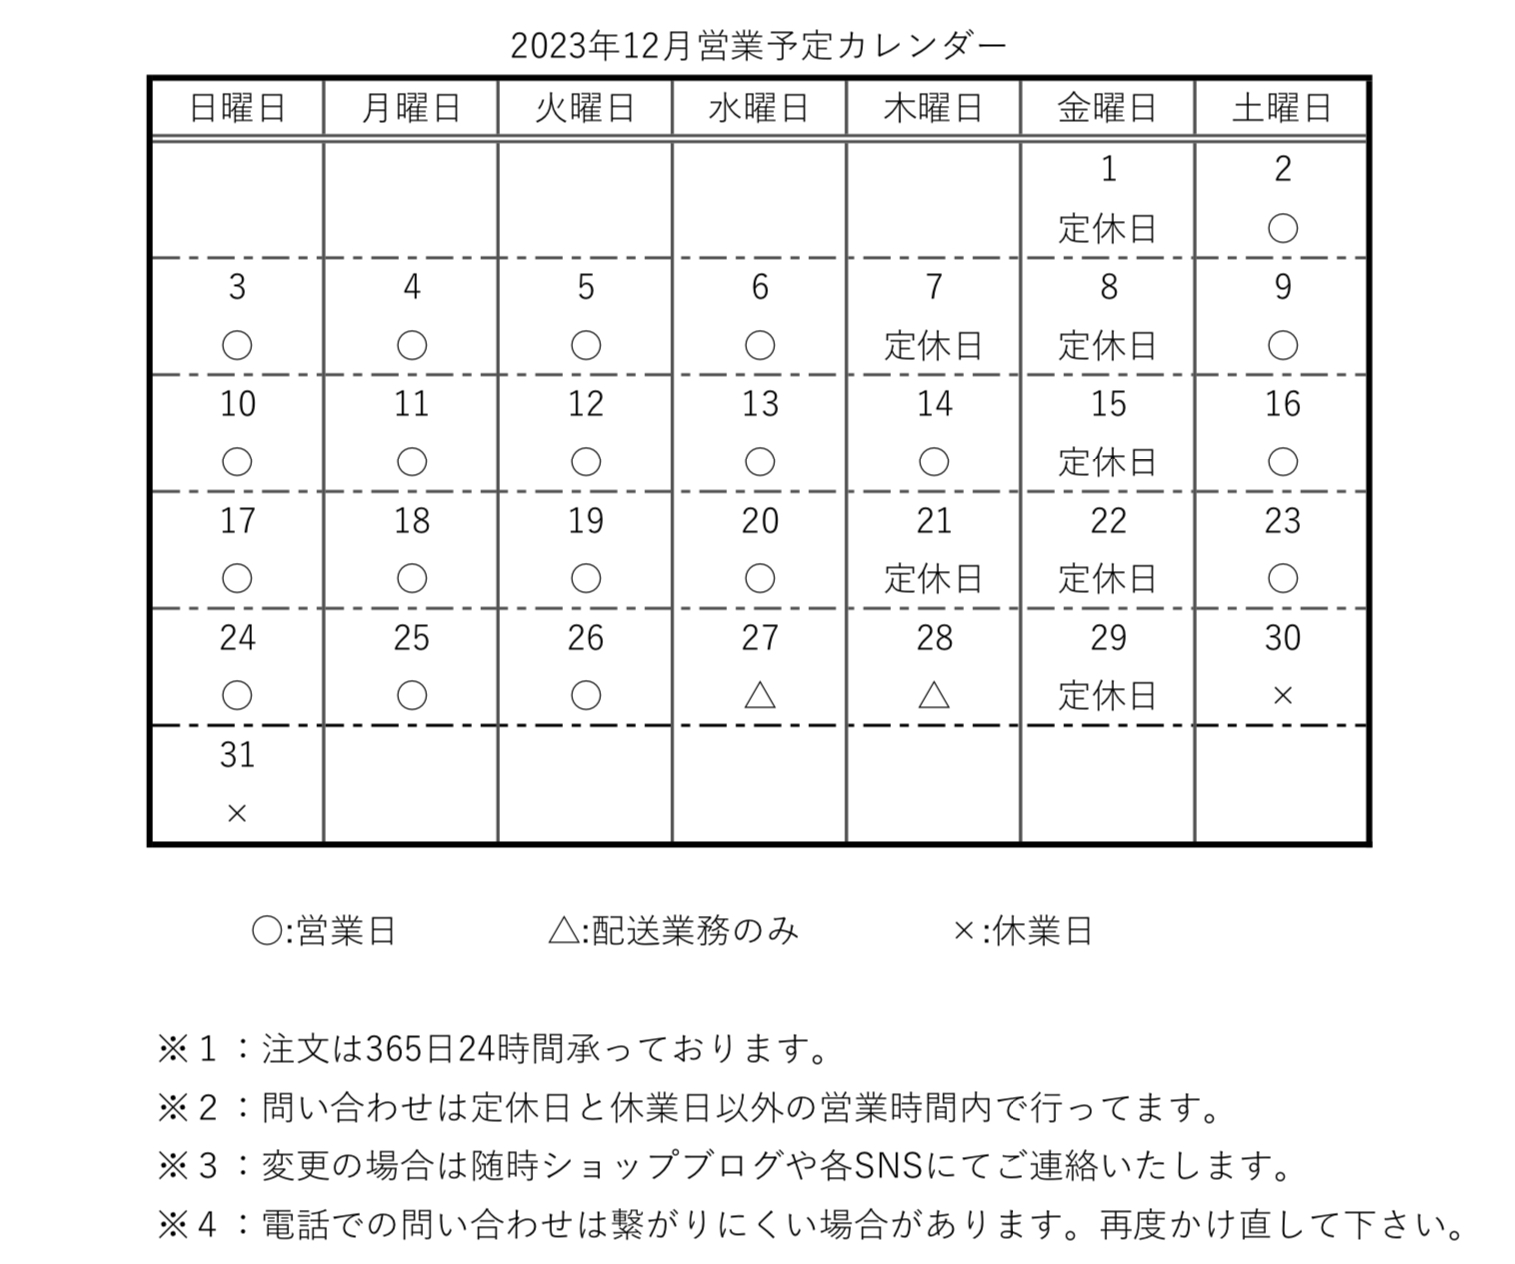 【カレンダー】2023年12月営業予定カレンダー